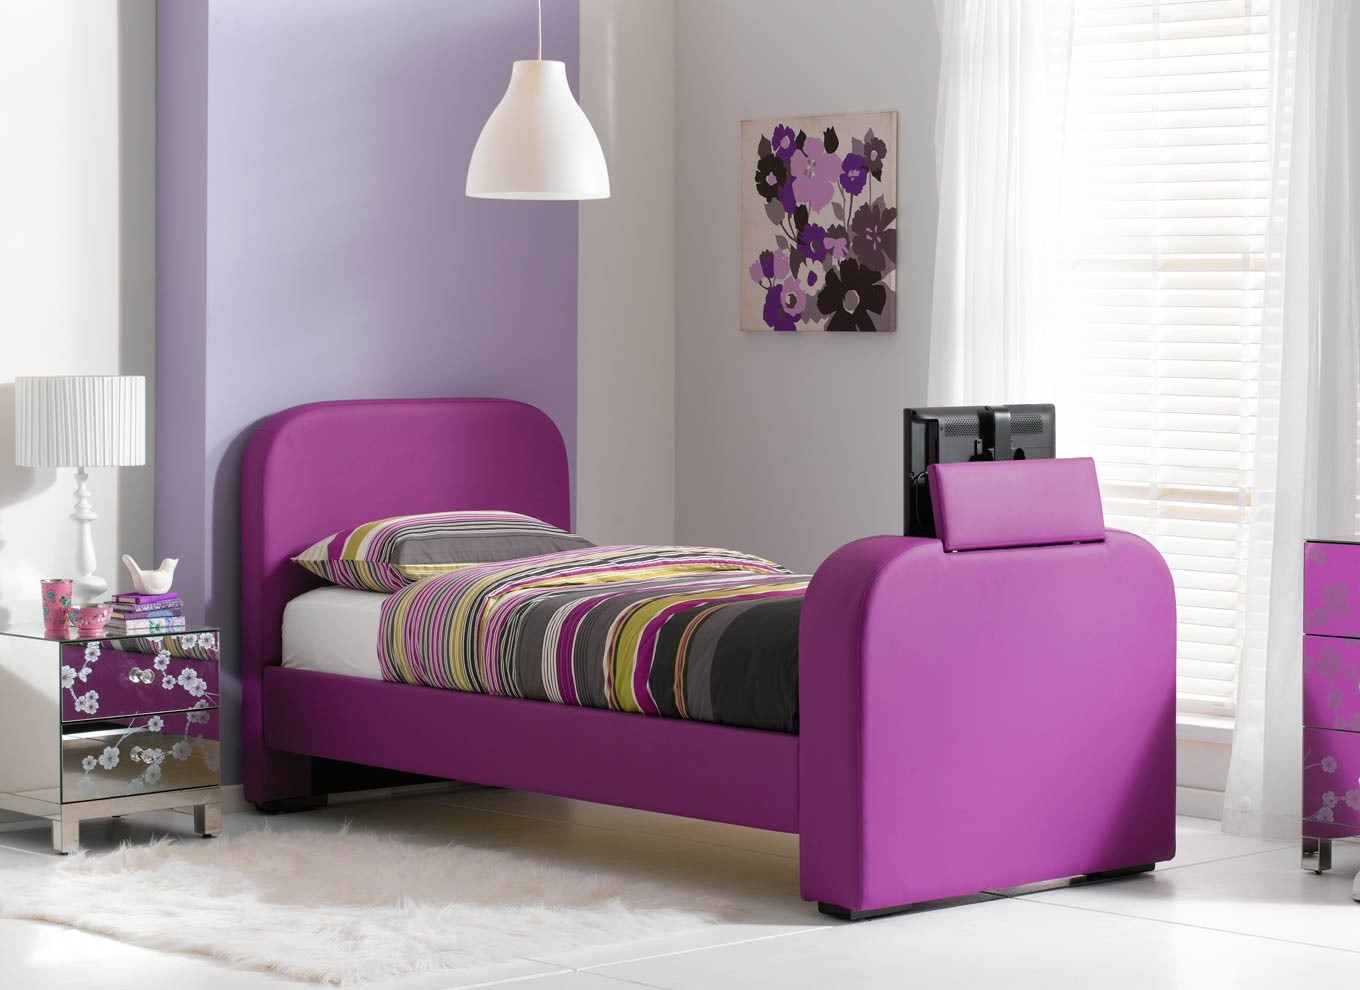 Фиолетовая кровать в детской комнате